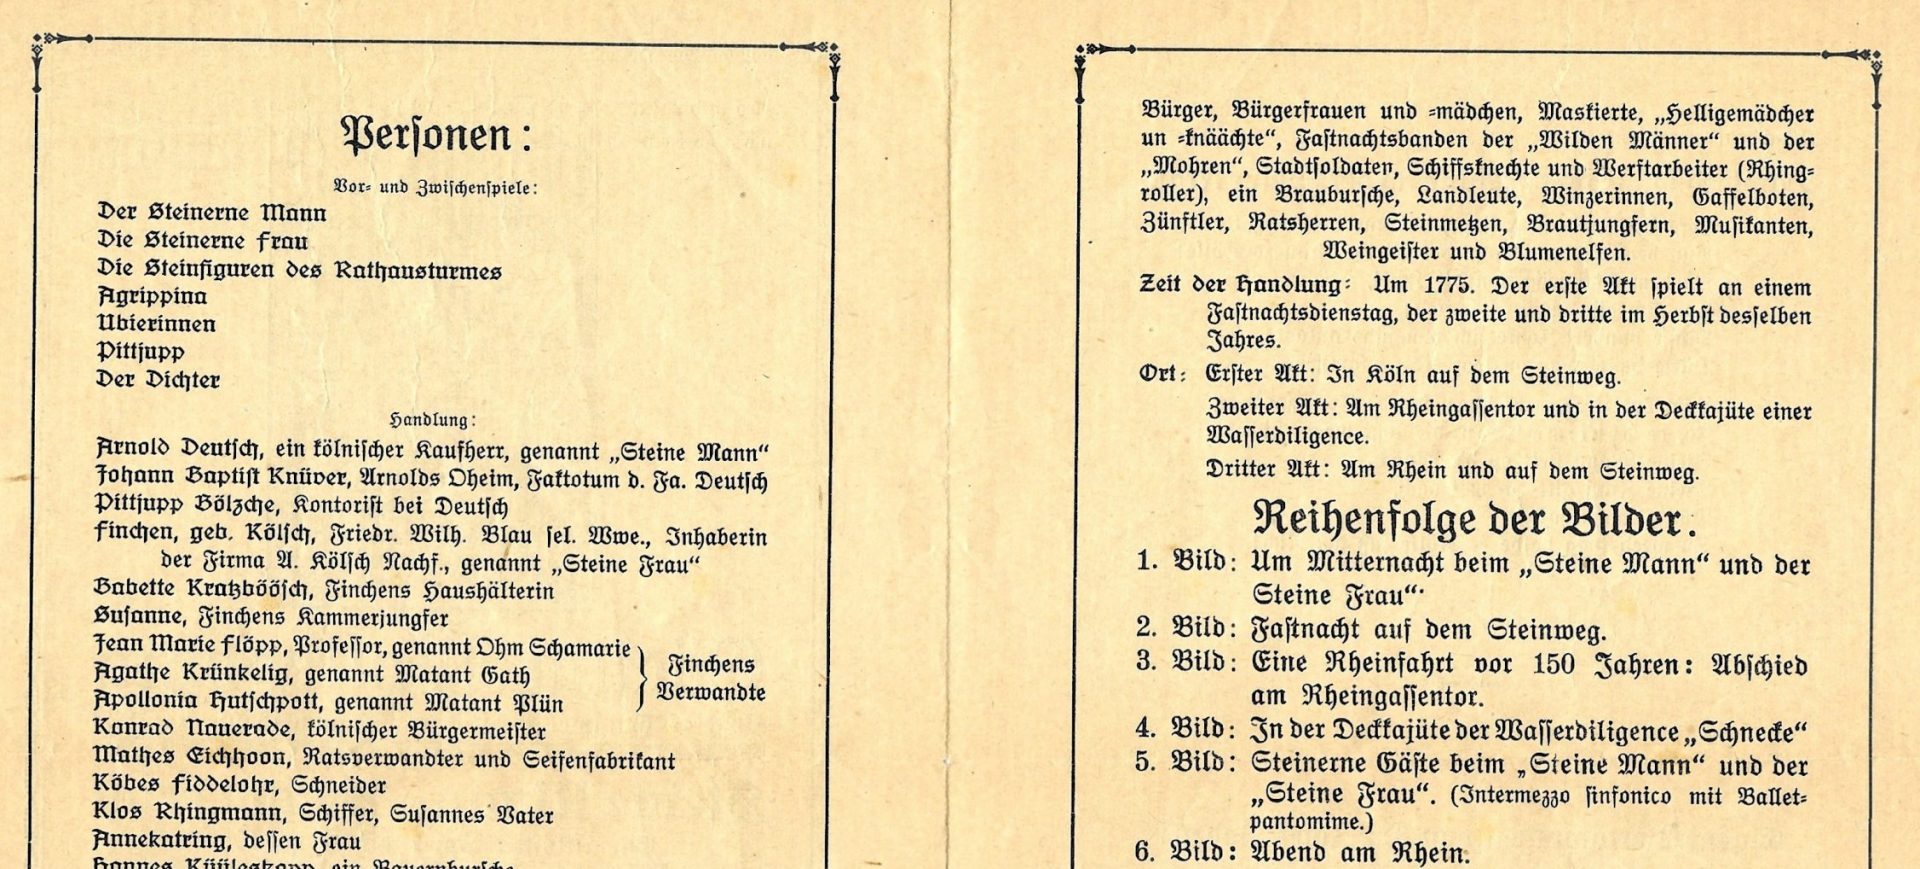 Steine Mann un Steine Frau - Divertissementchen 1926 - Programmheft